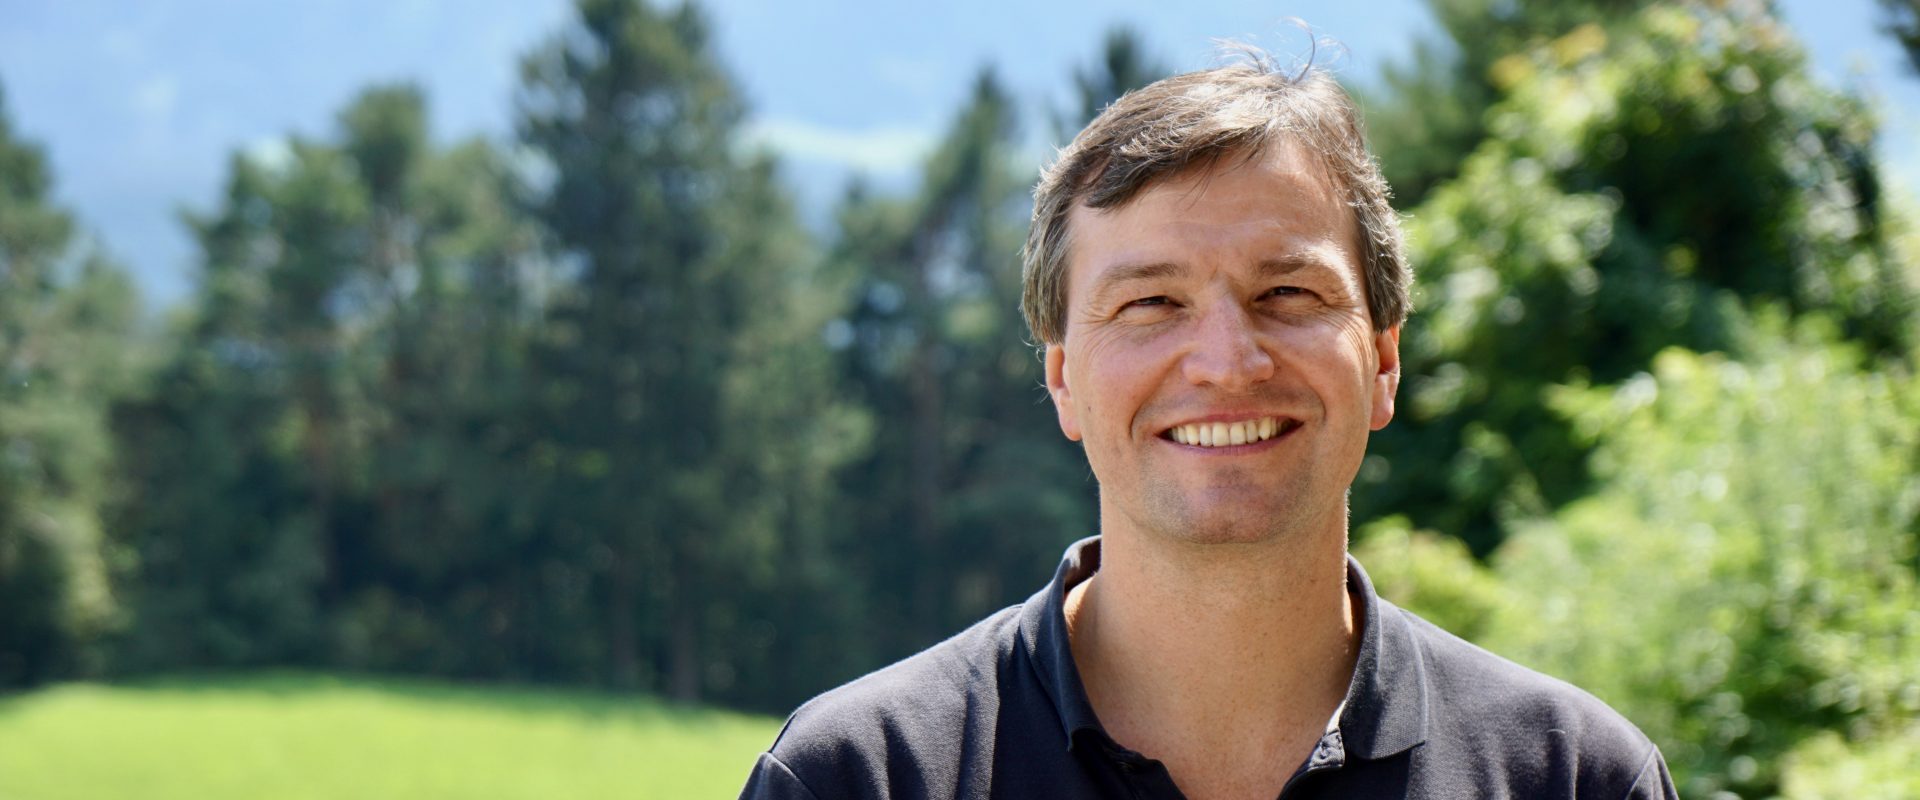 Peter Paal, Präsident des Österreichisches Kuratorium für Alpine Sicherheit (ÖKAS)